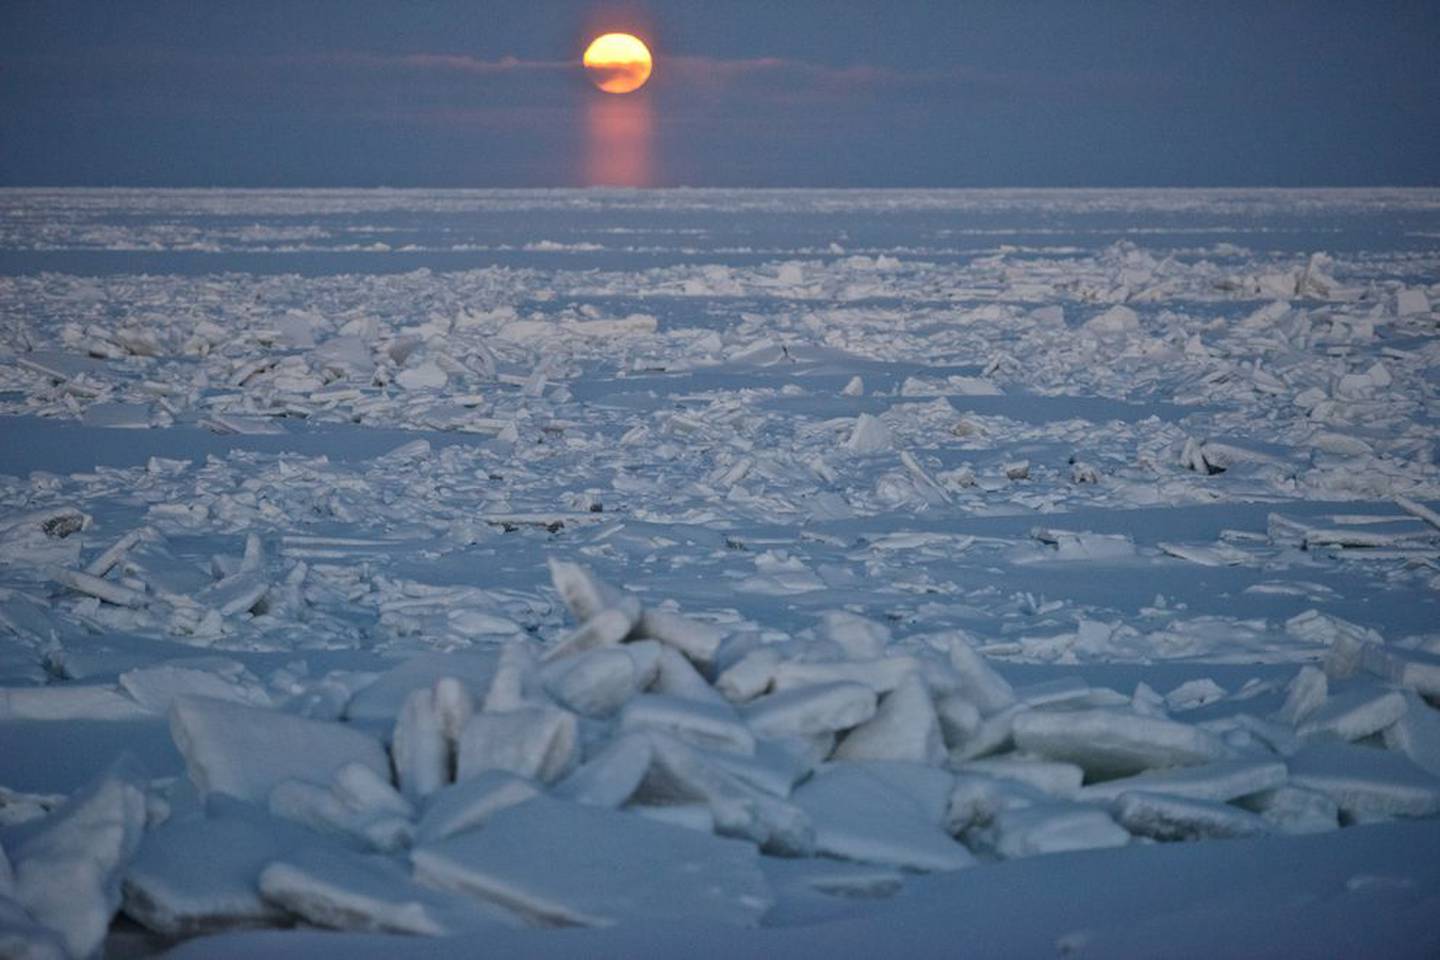 Barrow Moon Arctic Ocean sea ice utqiagvik